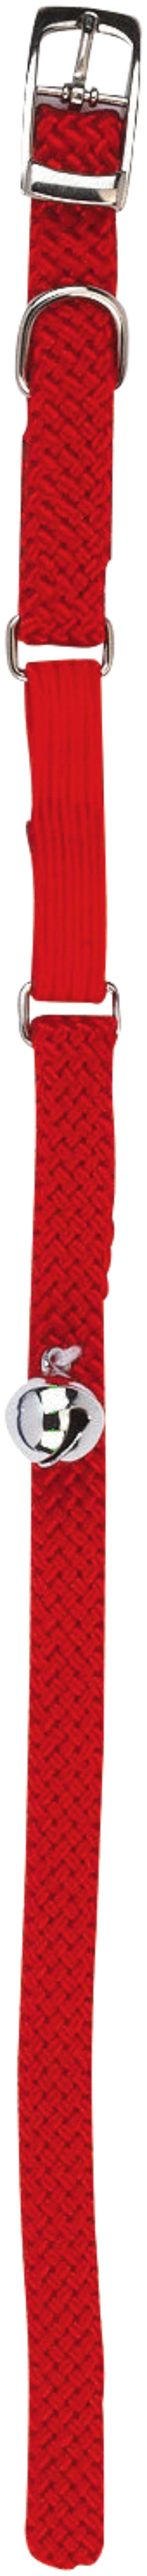 Katzenhalsband Nylon mit Gummizug und Glöckchen, rot